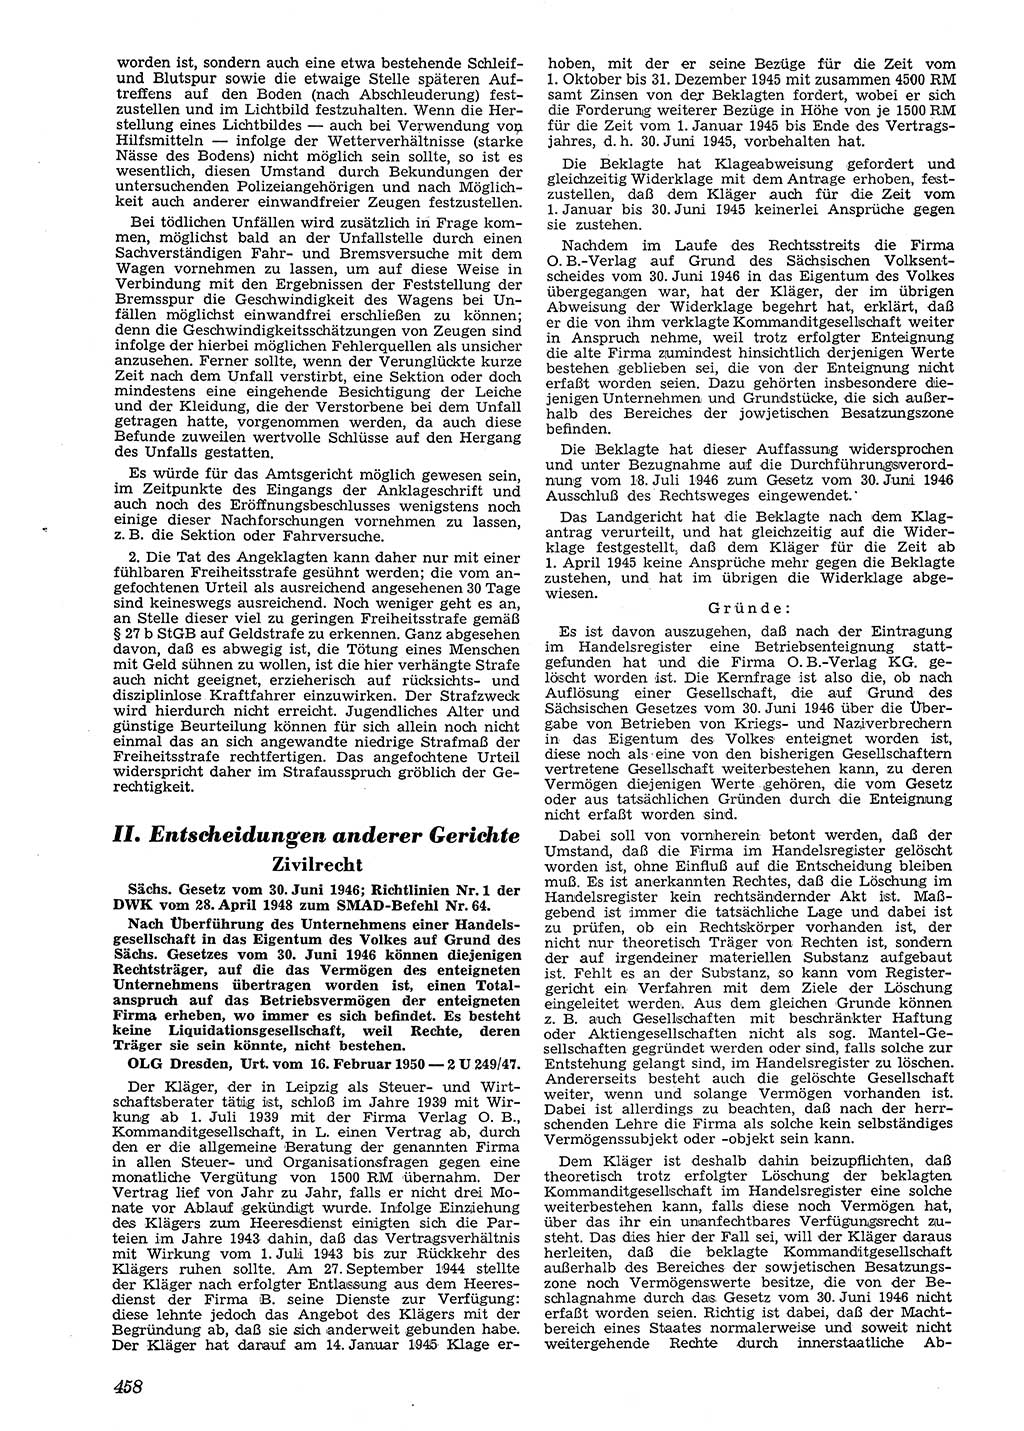 Neue Justiz (NJ), Zeitschrift für Recht und Rechtswissenschaft [Deutsche Demokratische Republik (DDR)], 4. Jahrgang 1950, Seite 458 (NJ DDR 1950, S. 458)